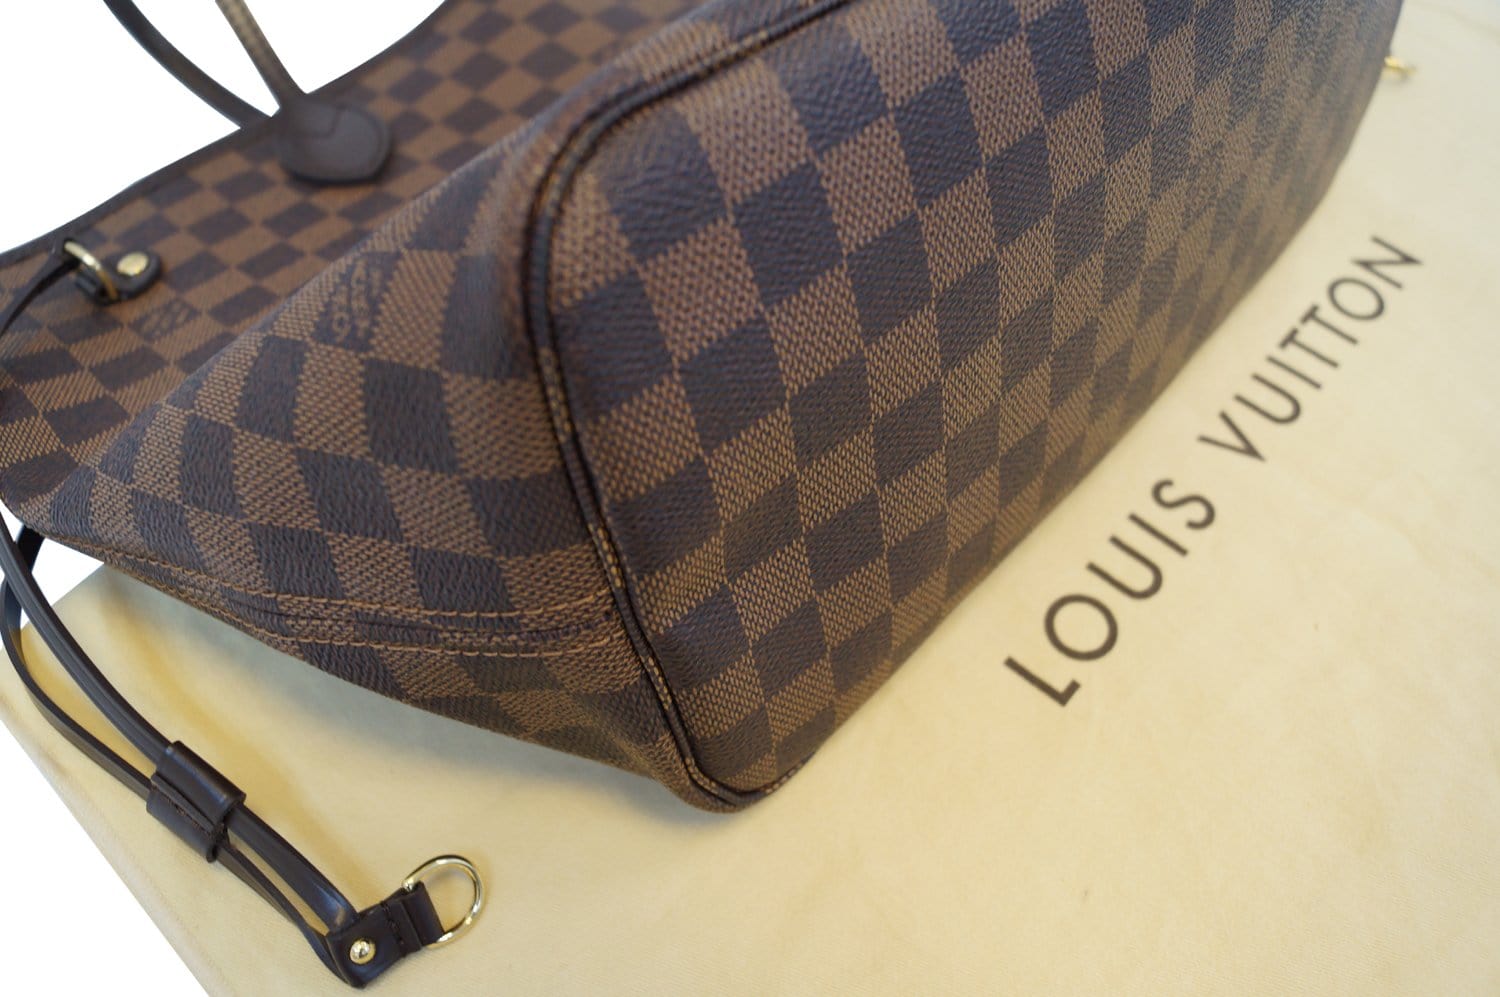 Authentic Louis Vuitton Neverfull MM Damier Azur